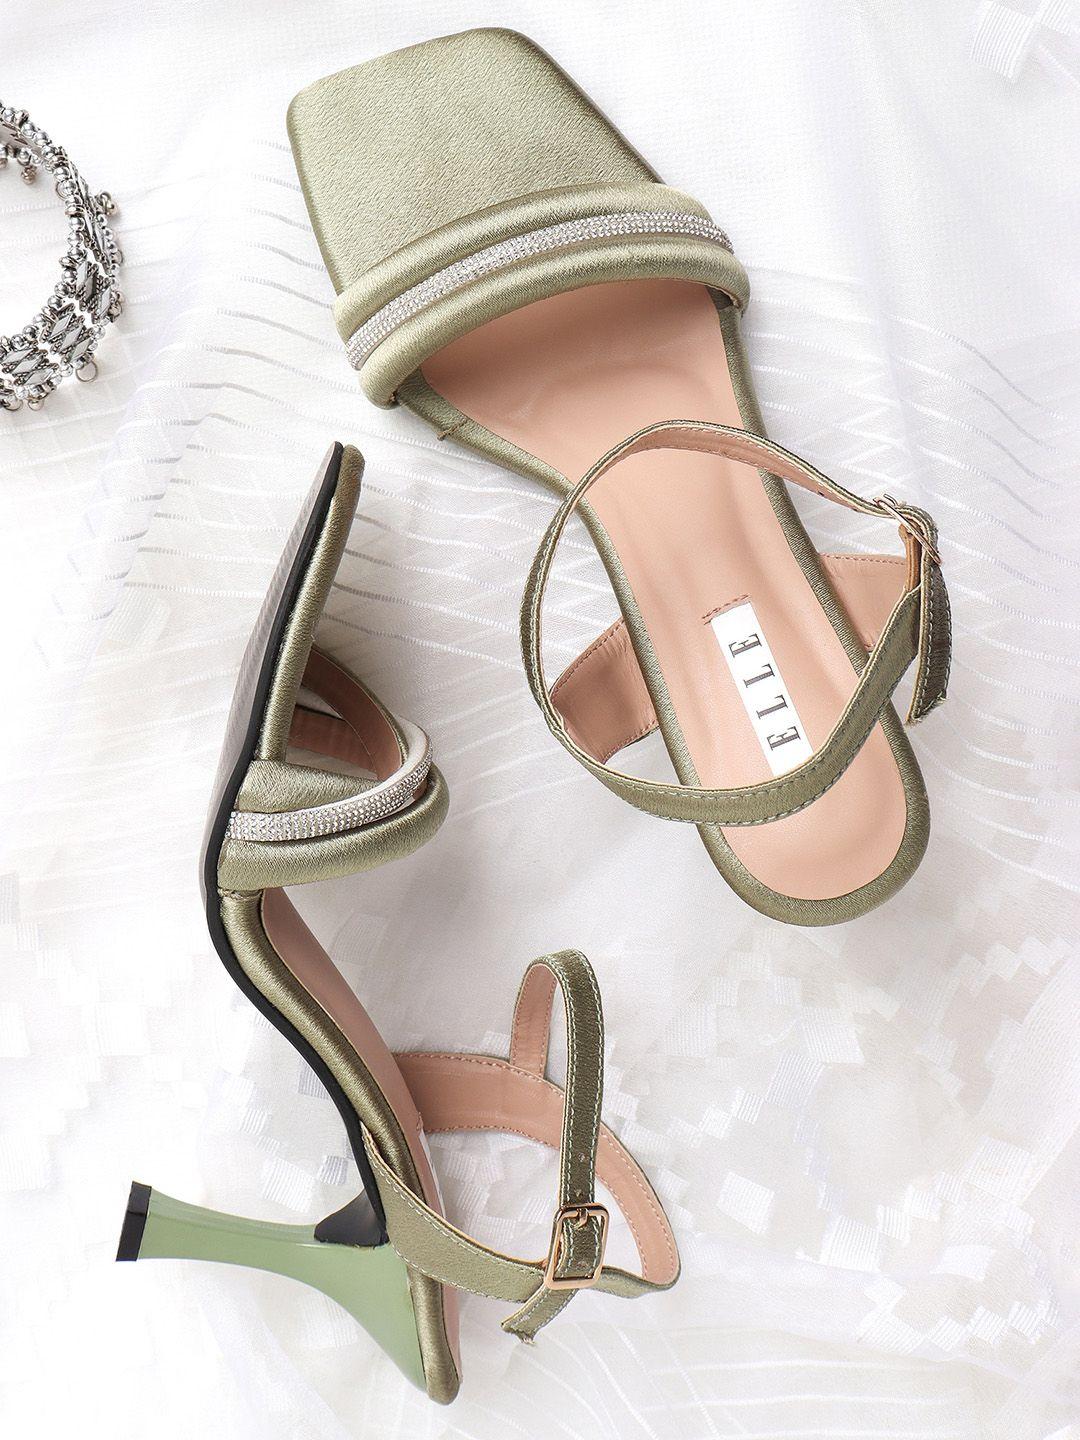 elle-women-embellished-stiletto-heels